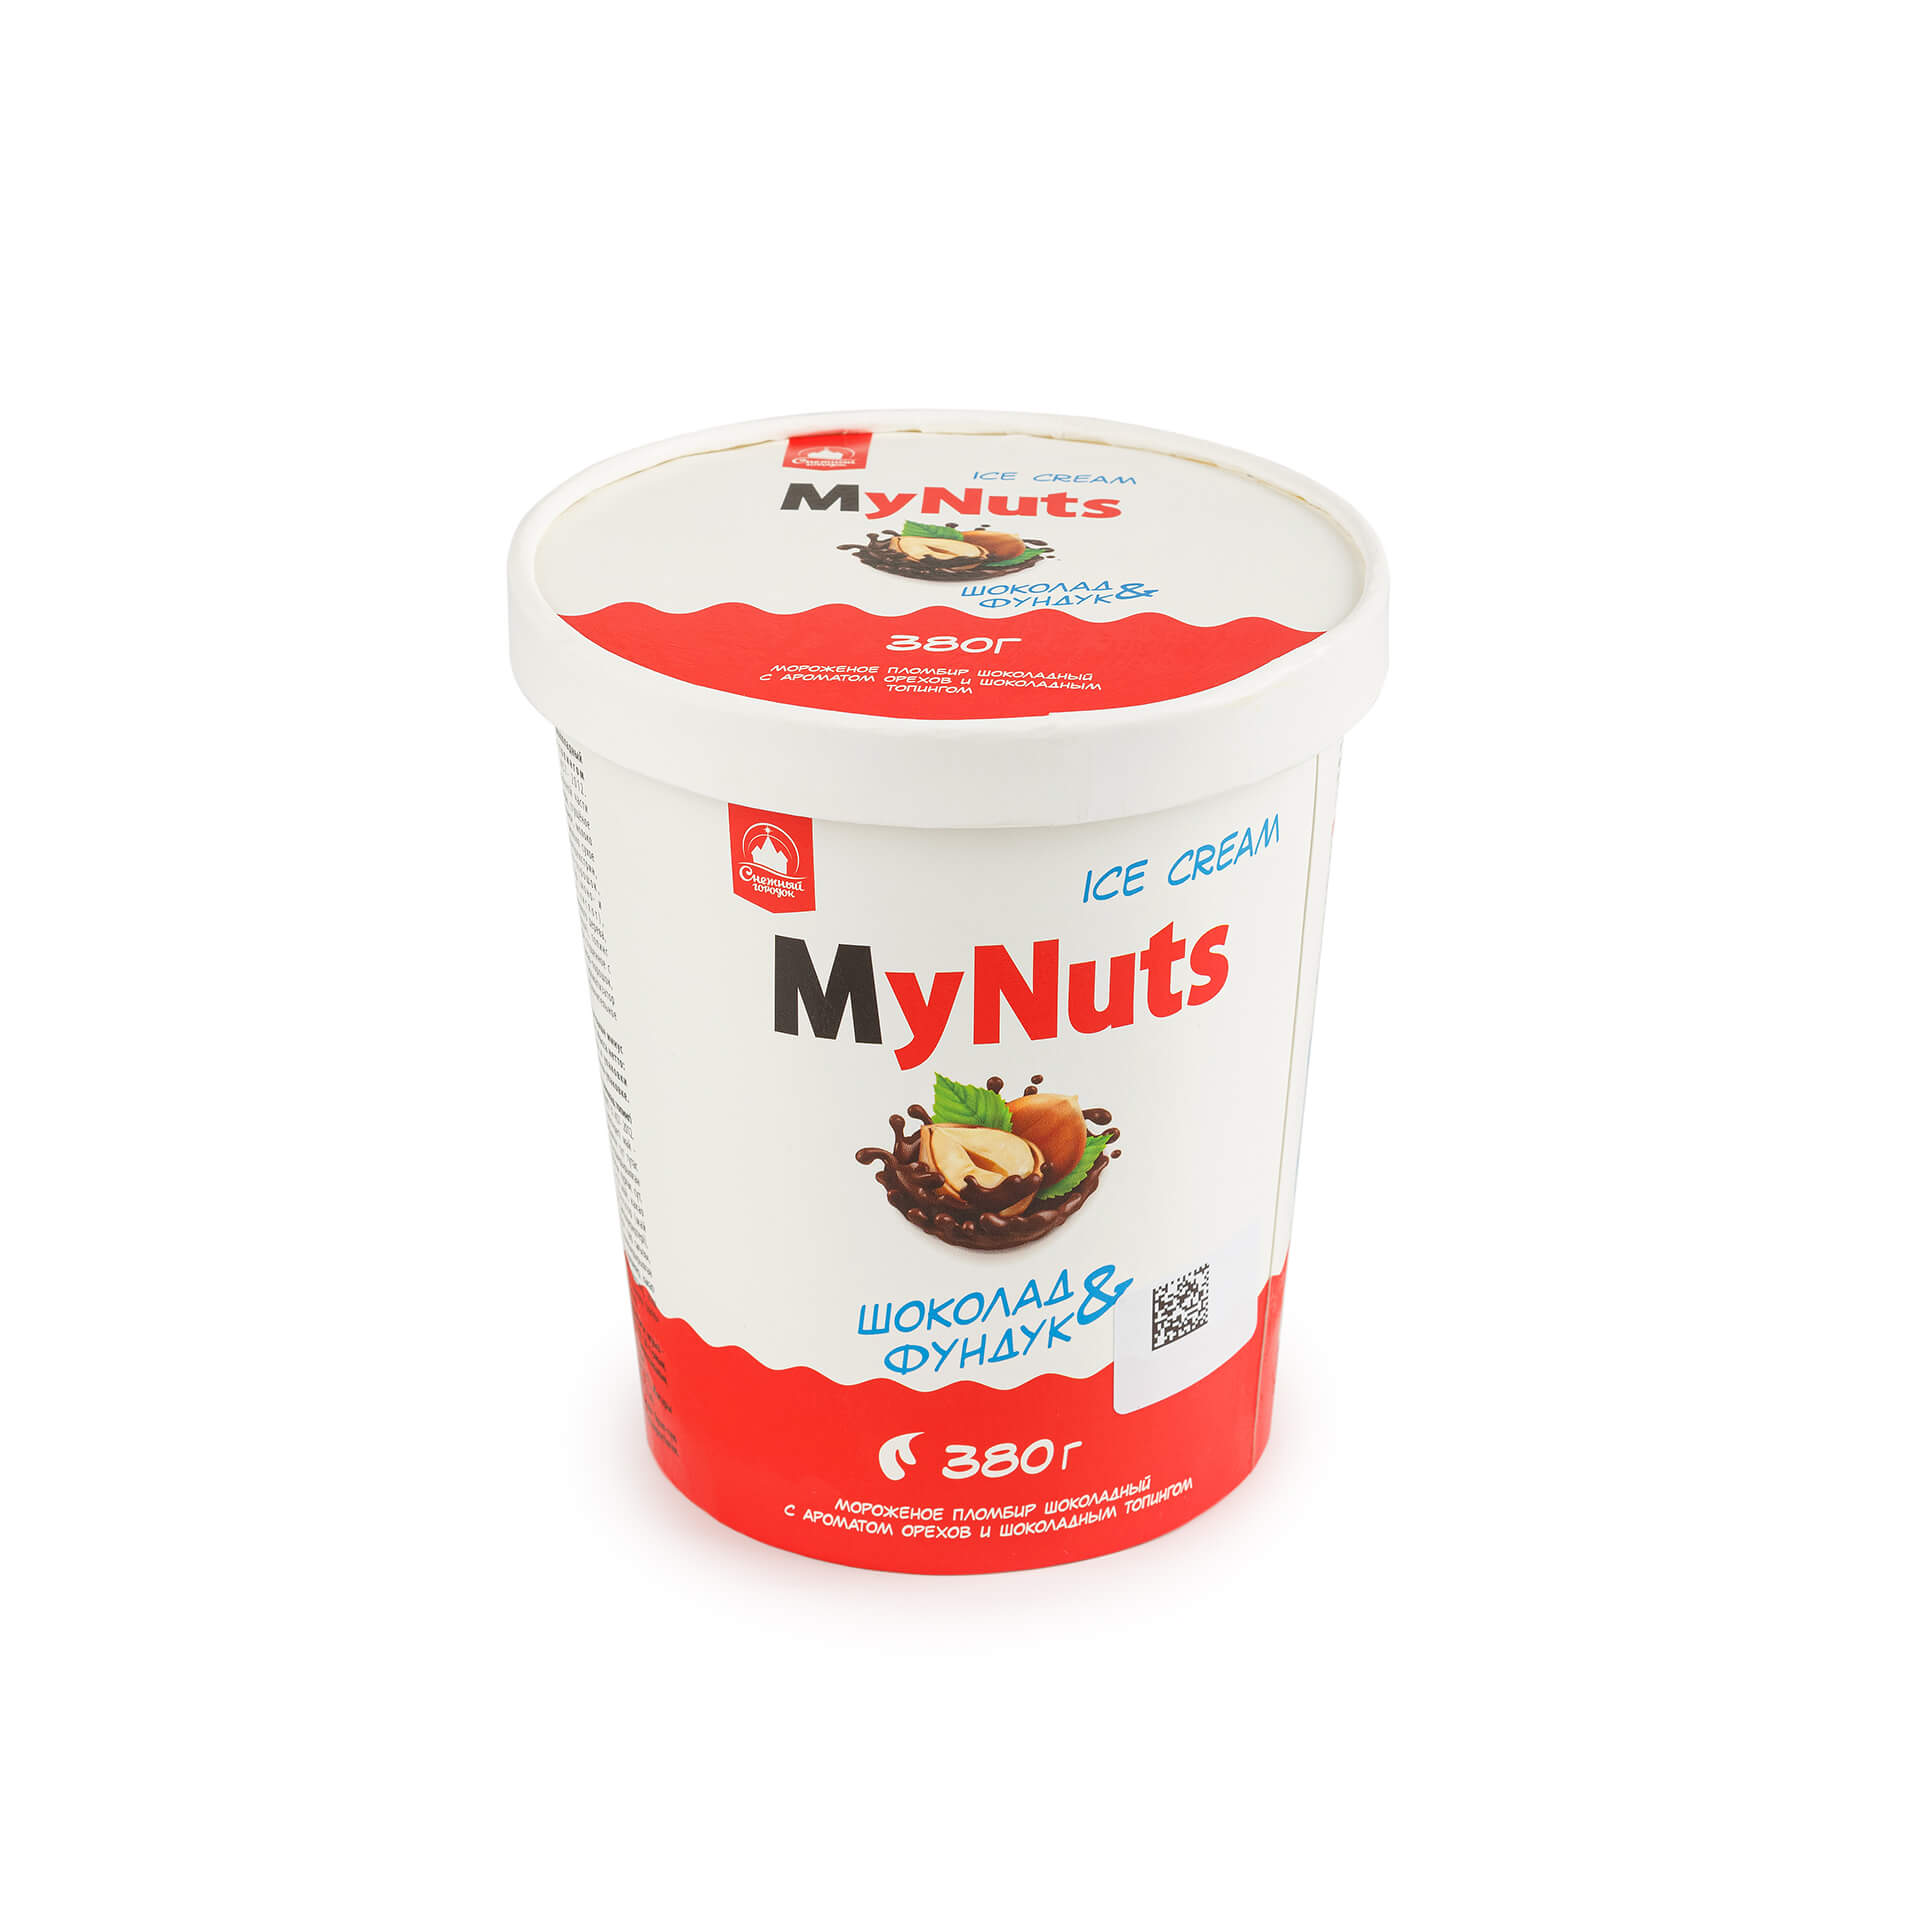 Мороженое шоколад и фундук ведро "My Nuts" Снежный городок 380 г 8643LED, общий вид, купить оптом с доставкой по москве и московской области, недорого, низкая цена